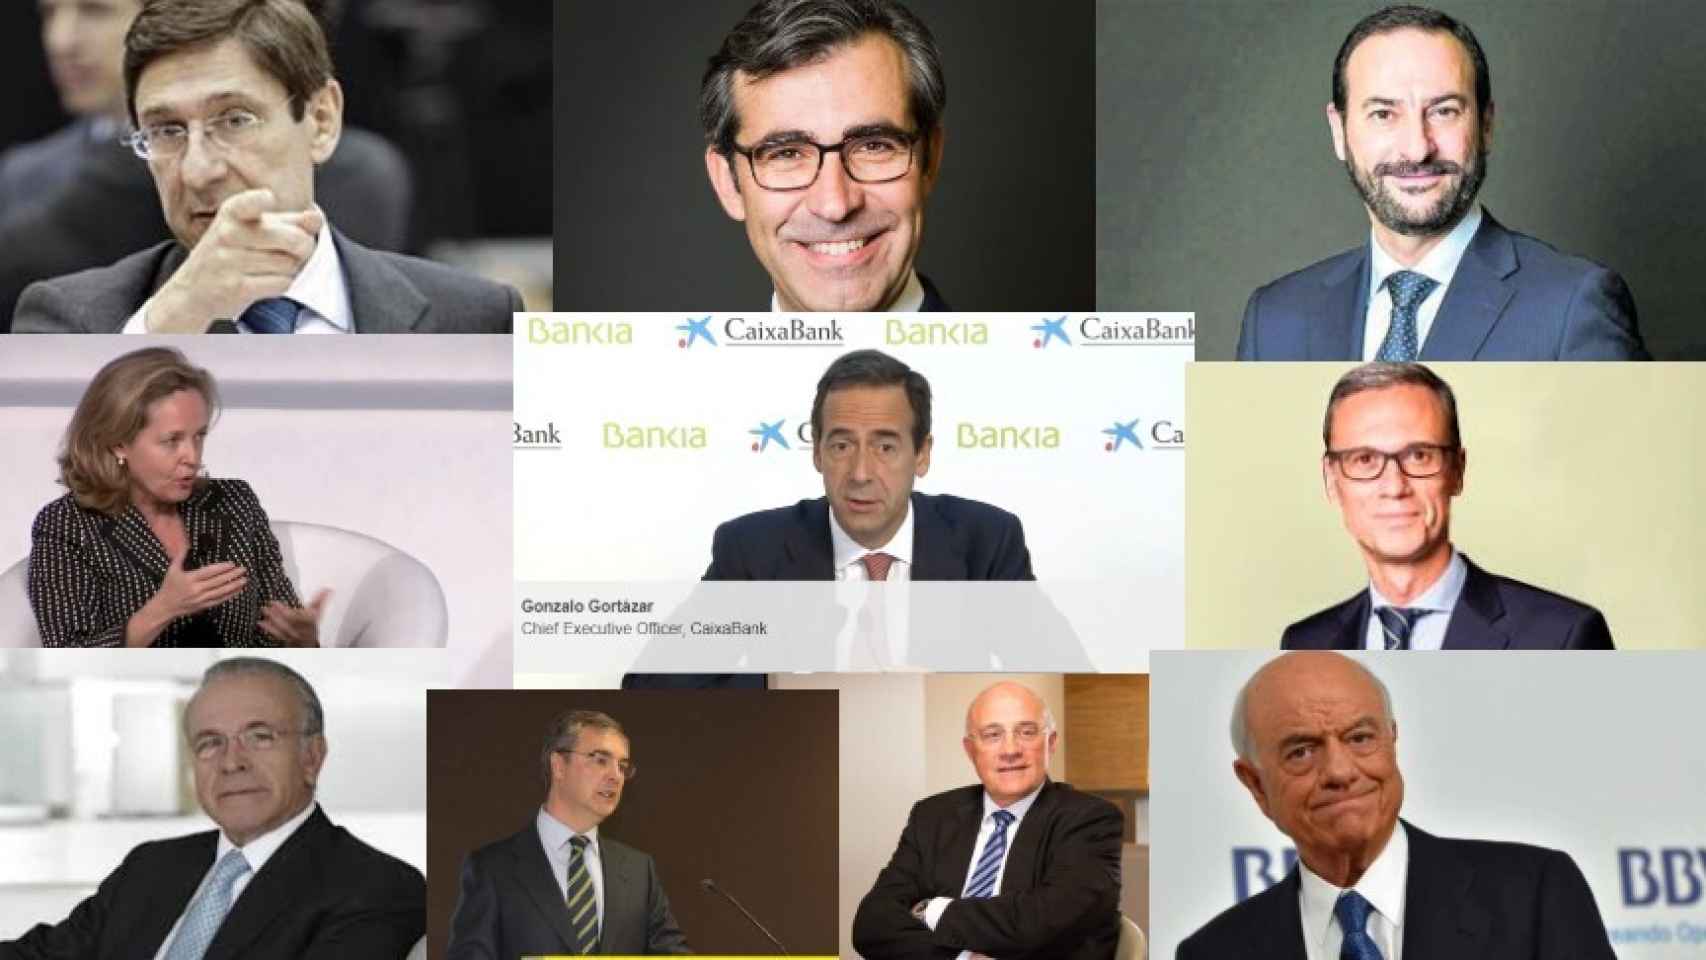 J. I. Goirigolzarri, E. Solla, D. López, N. Calviño, G. Gortázar, M. Galarza, I. Fainé, J. Sevilla, J. Oliu y FG.